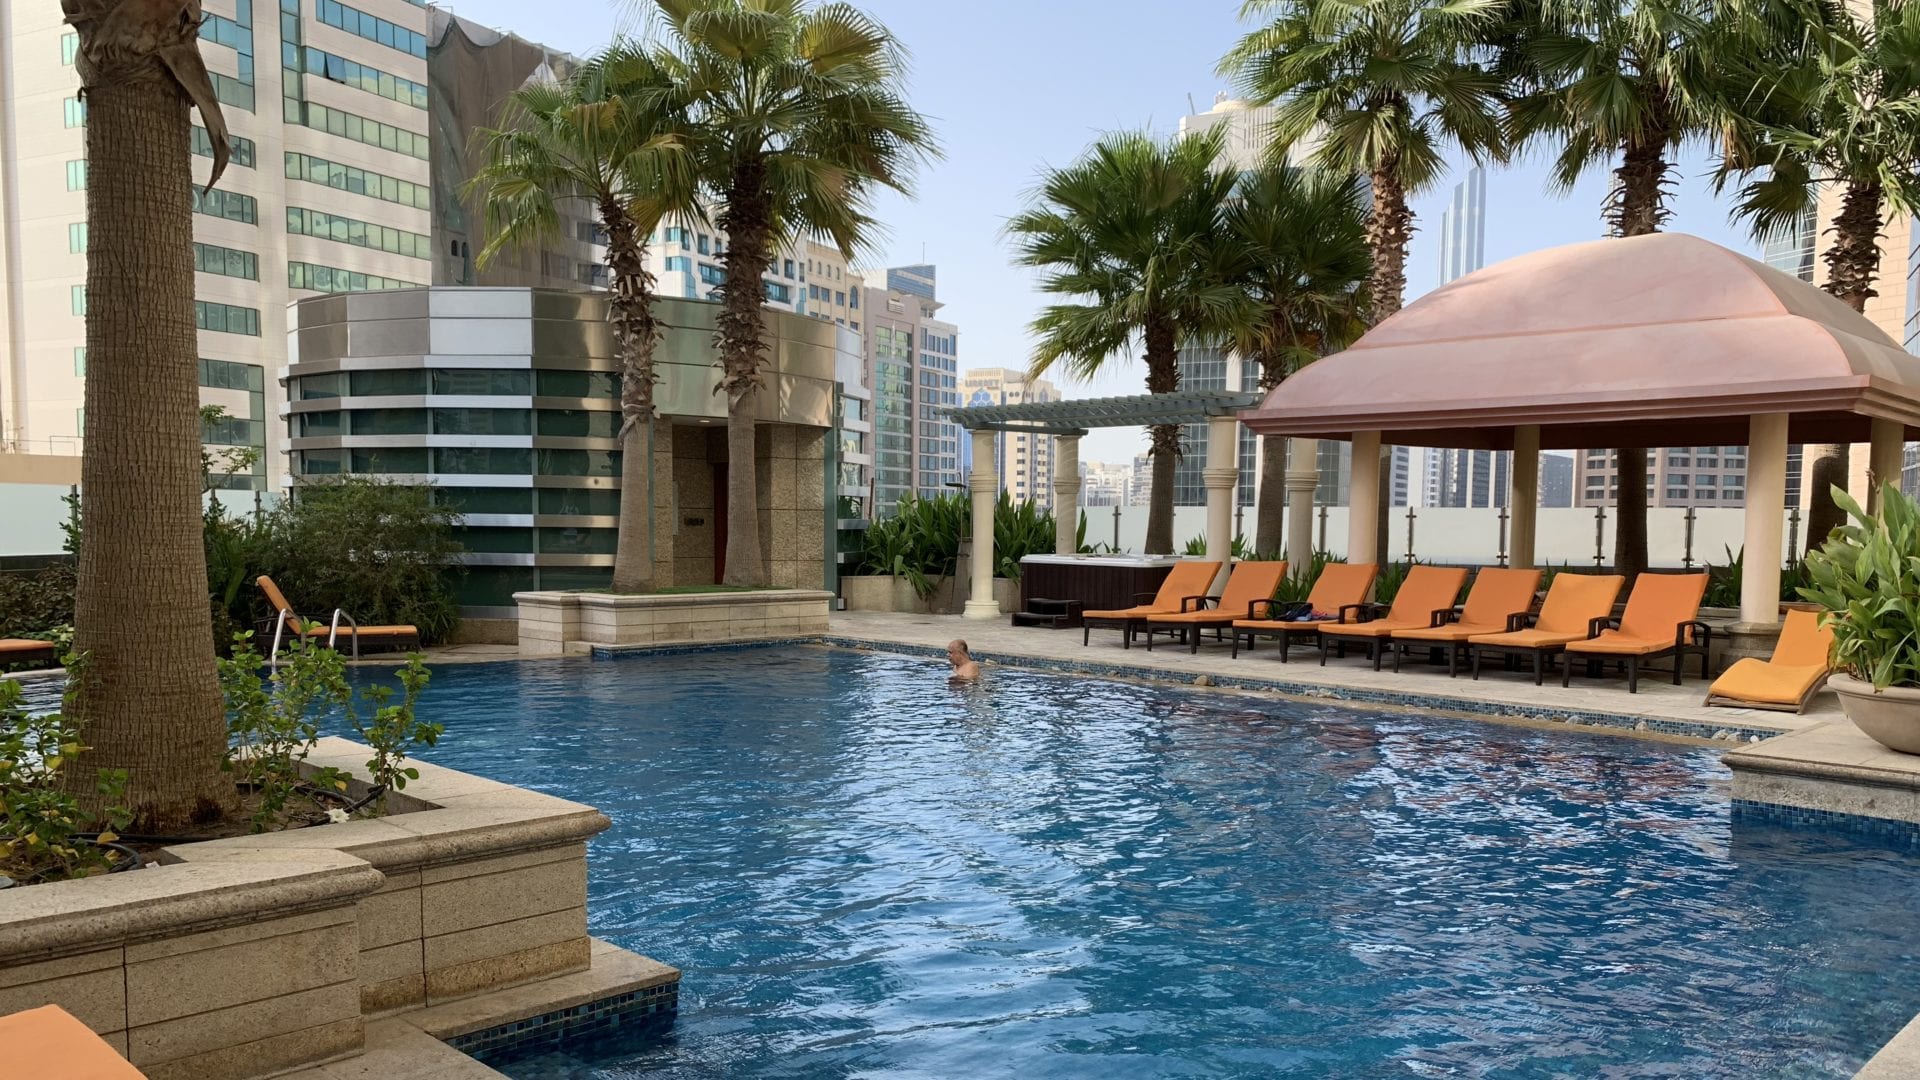 Sofitel Abu Dhabi Pool1